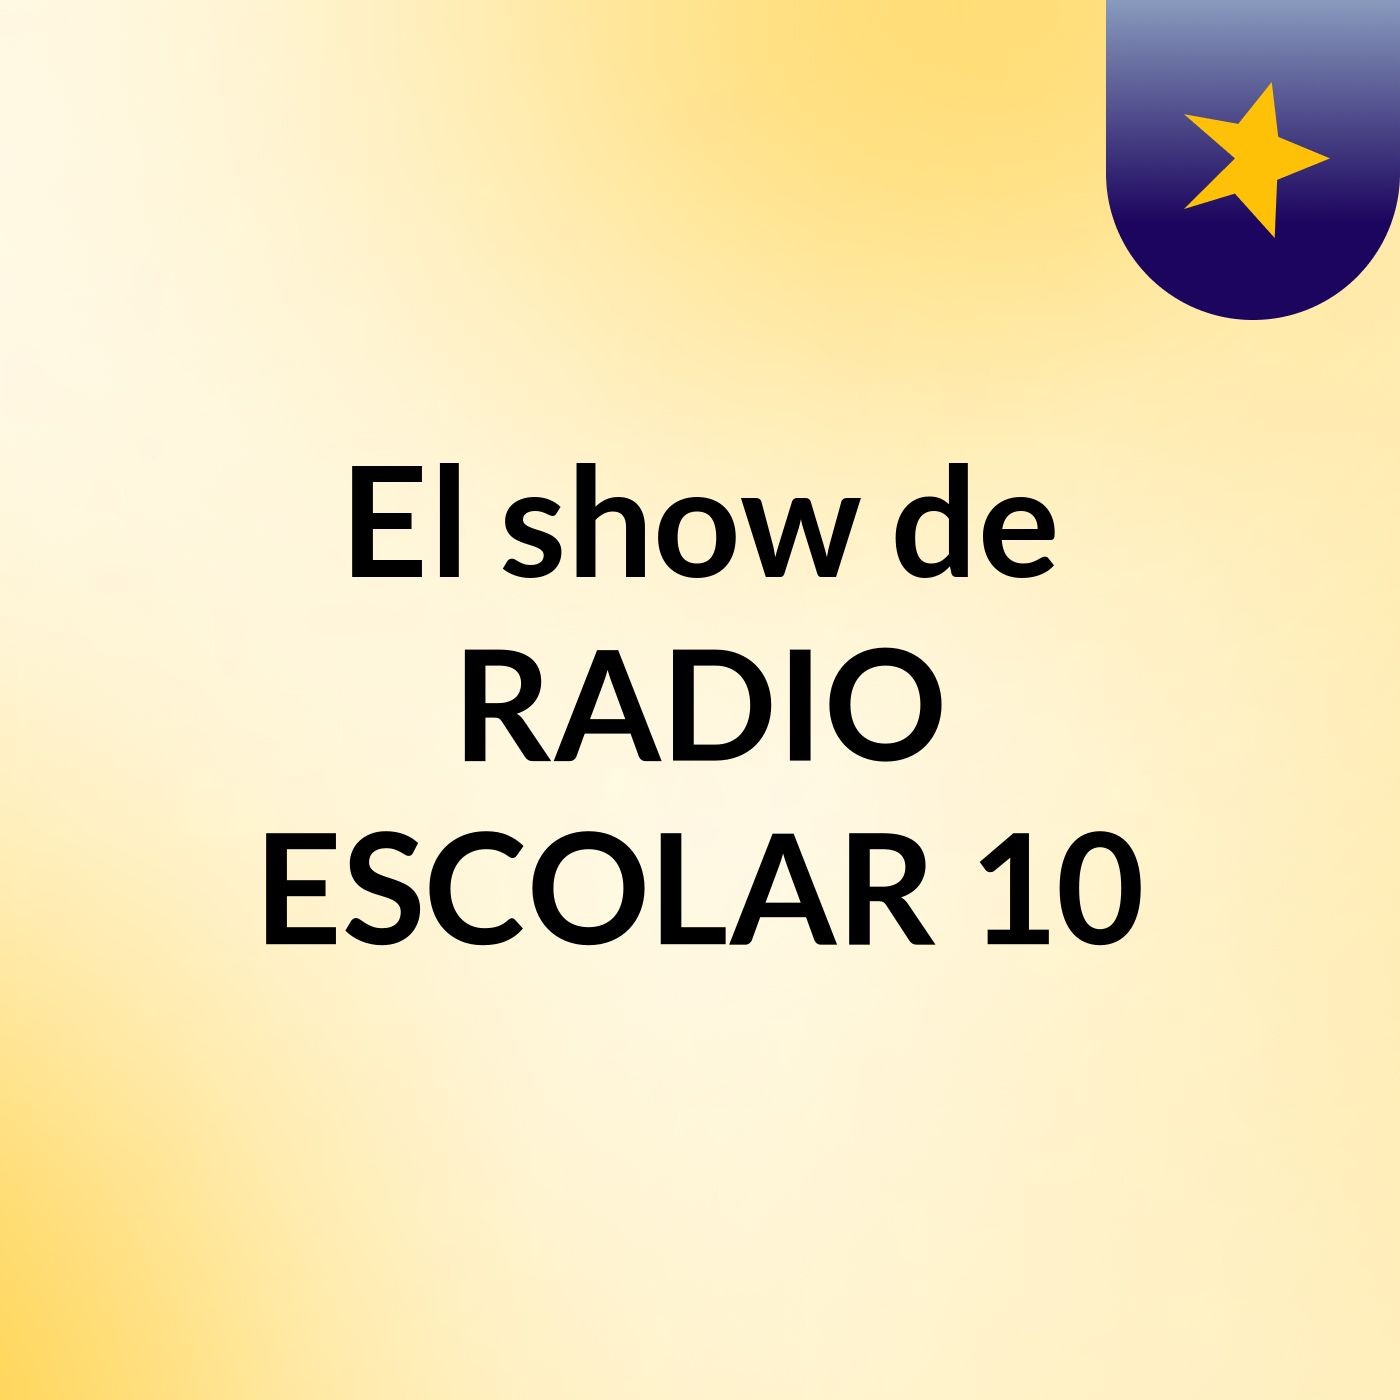 El show de RADIO ESCOLAR 10